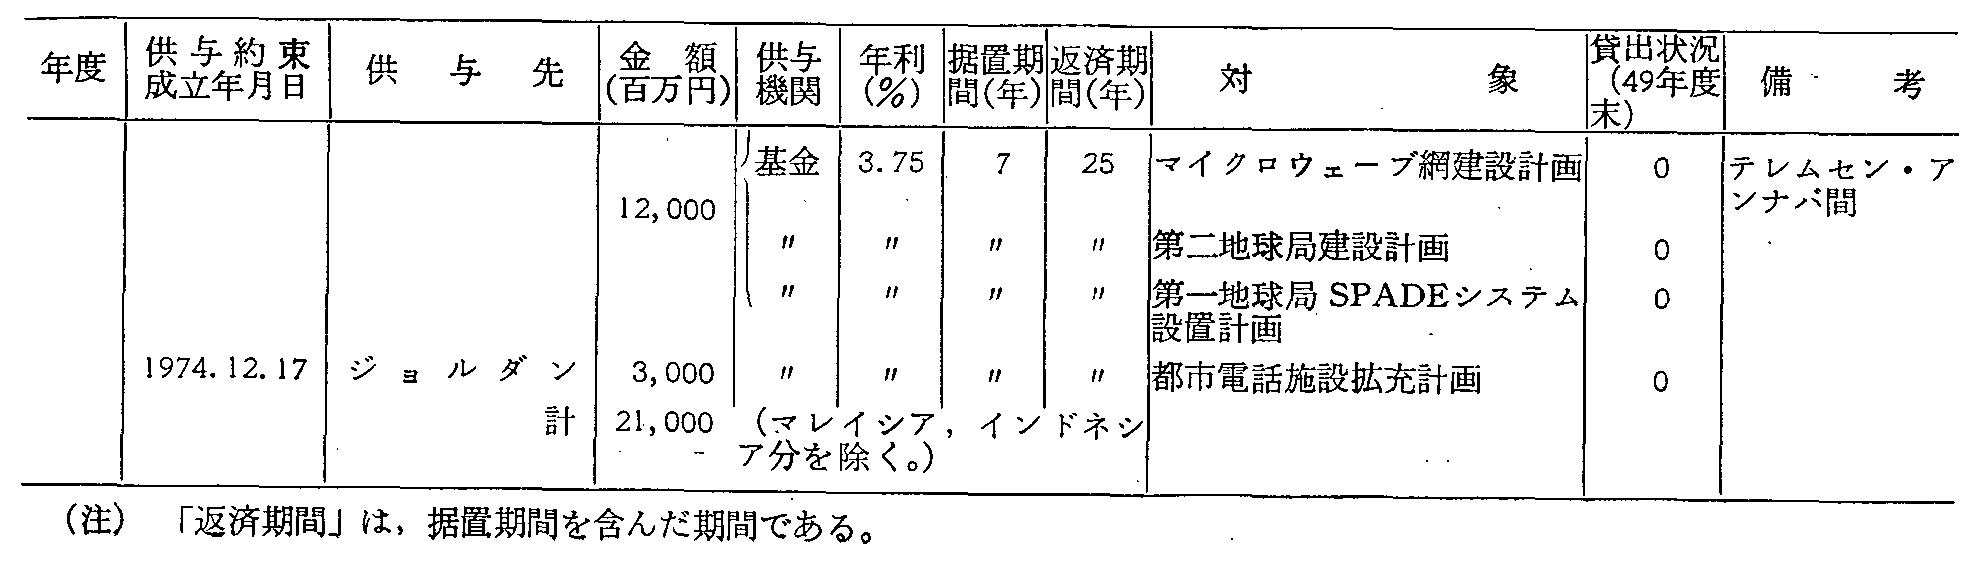 第2-8-8表 通信分野における円借款一覧表(5)